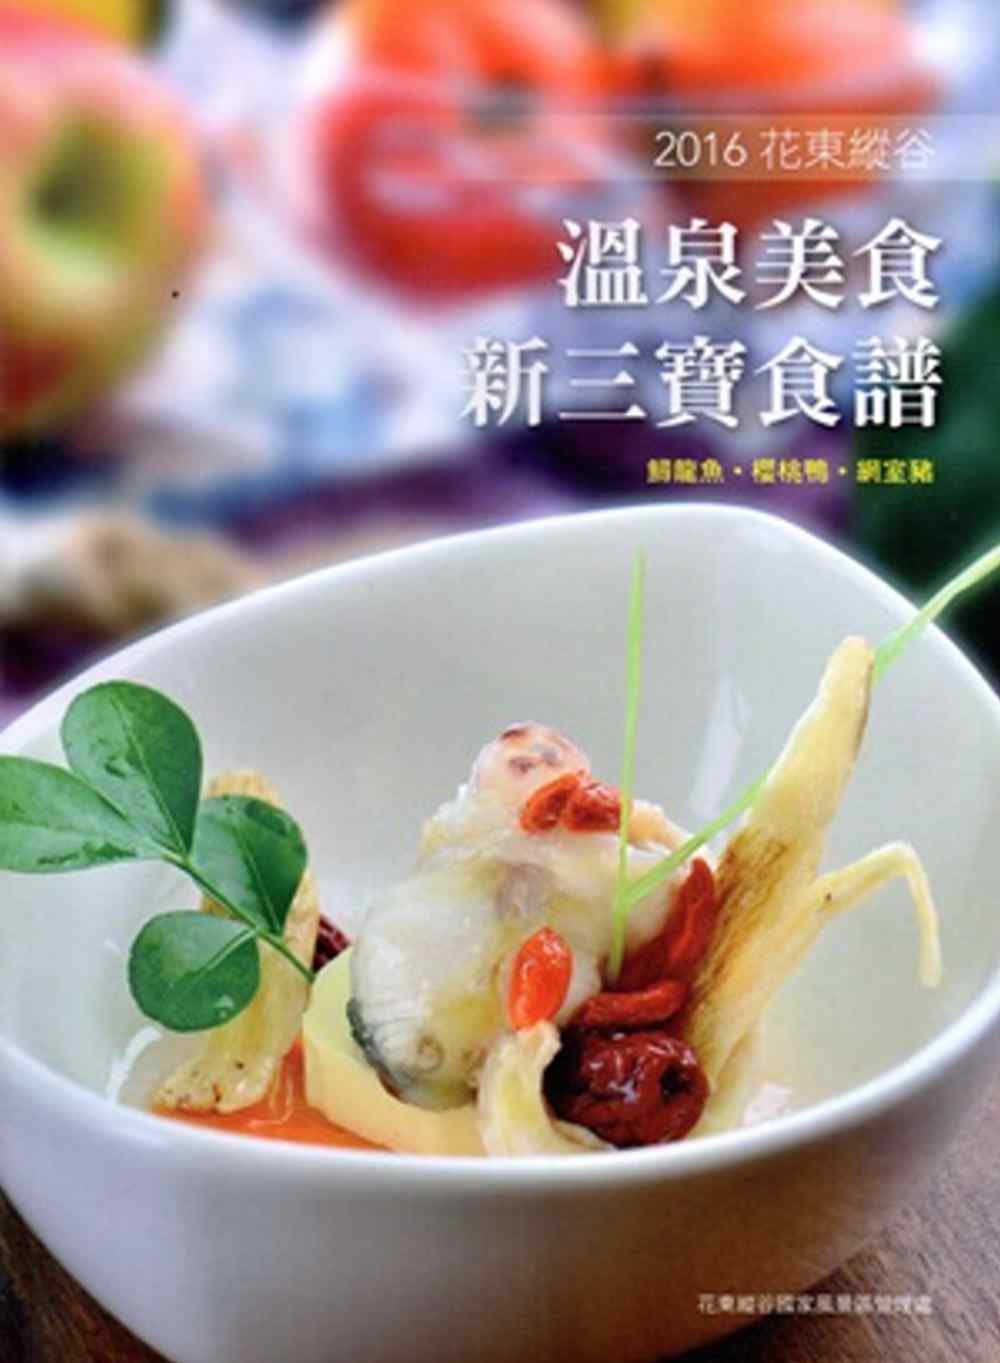 2016花東縱谷溫泉美食新三寶食譜